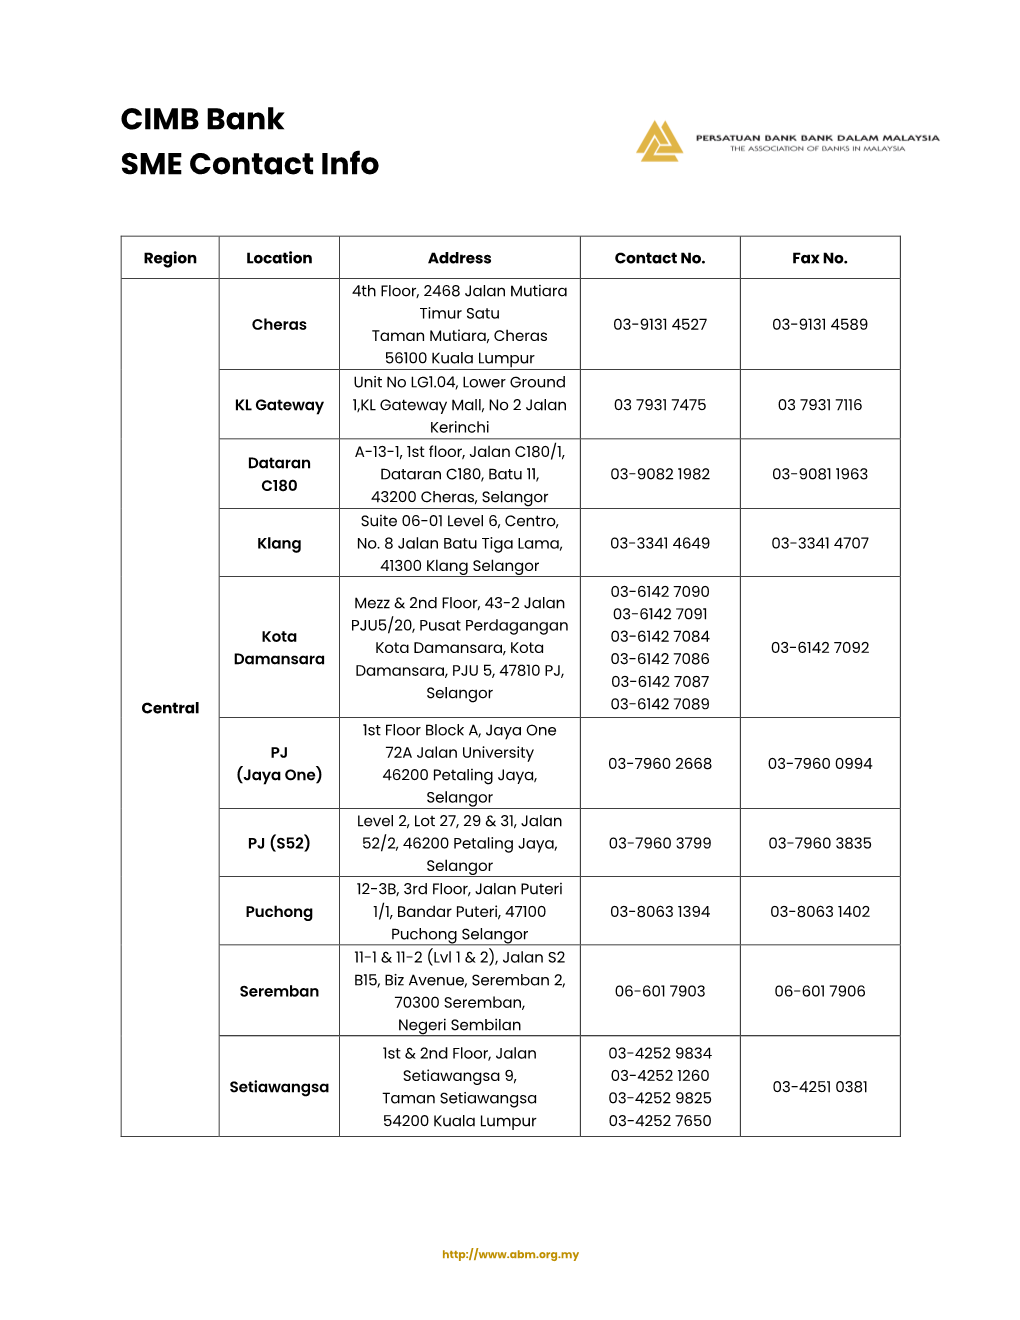 CIMB Bank SME Contact Info